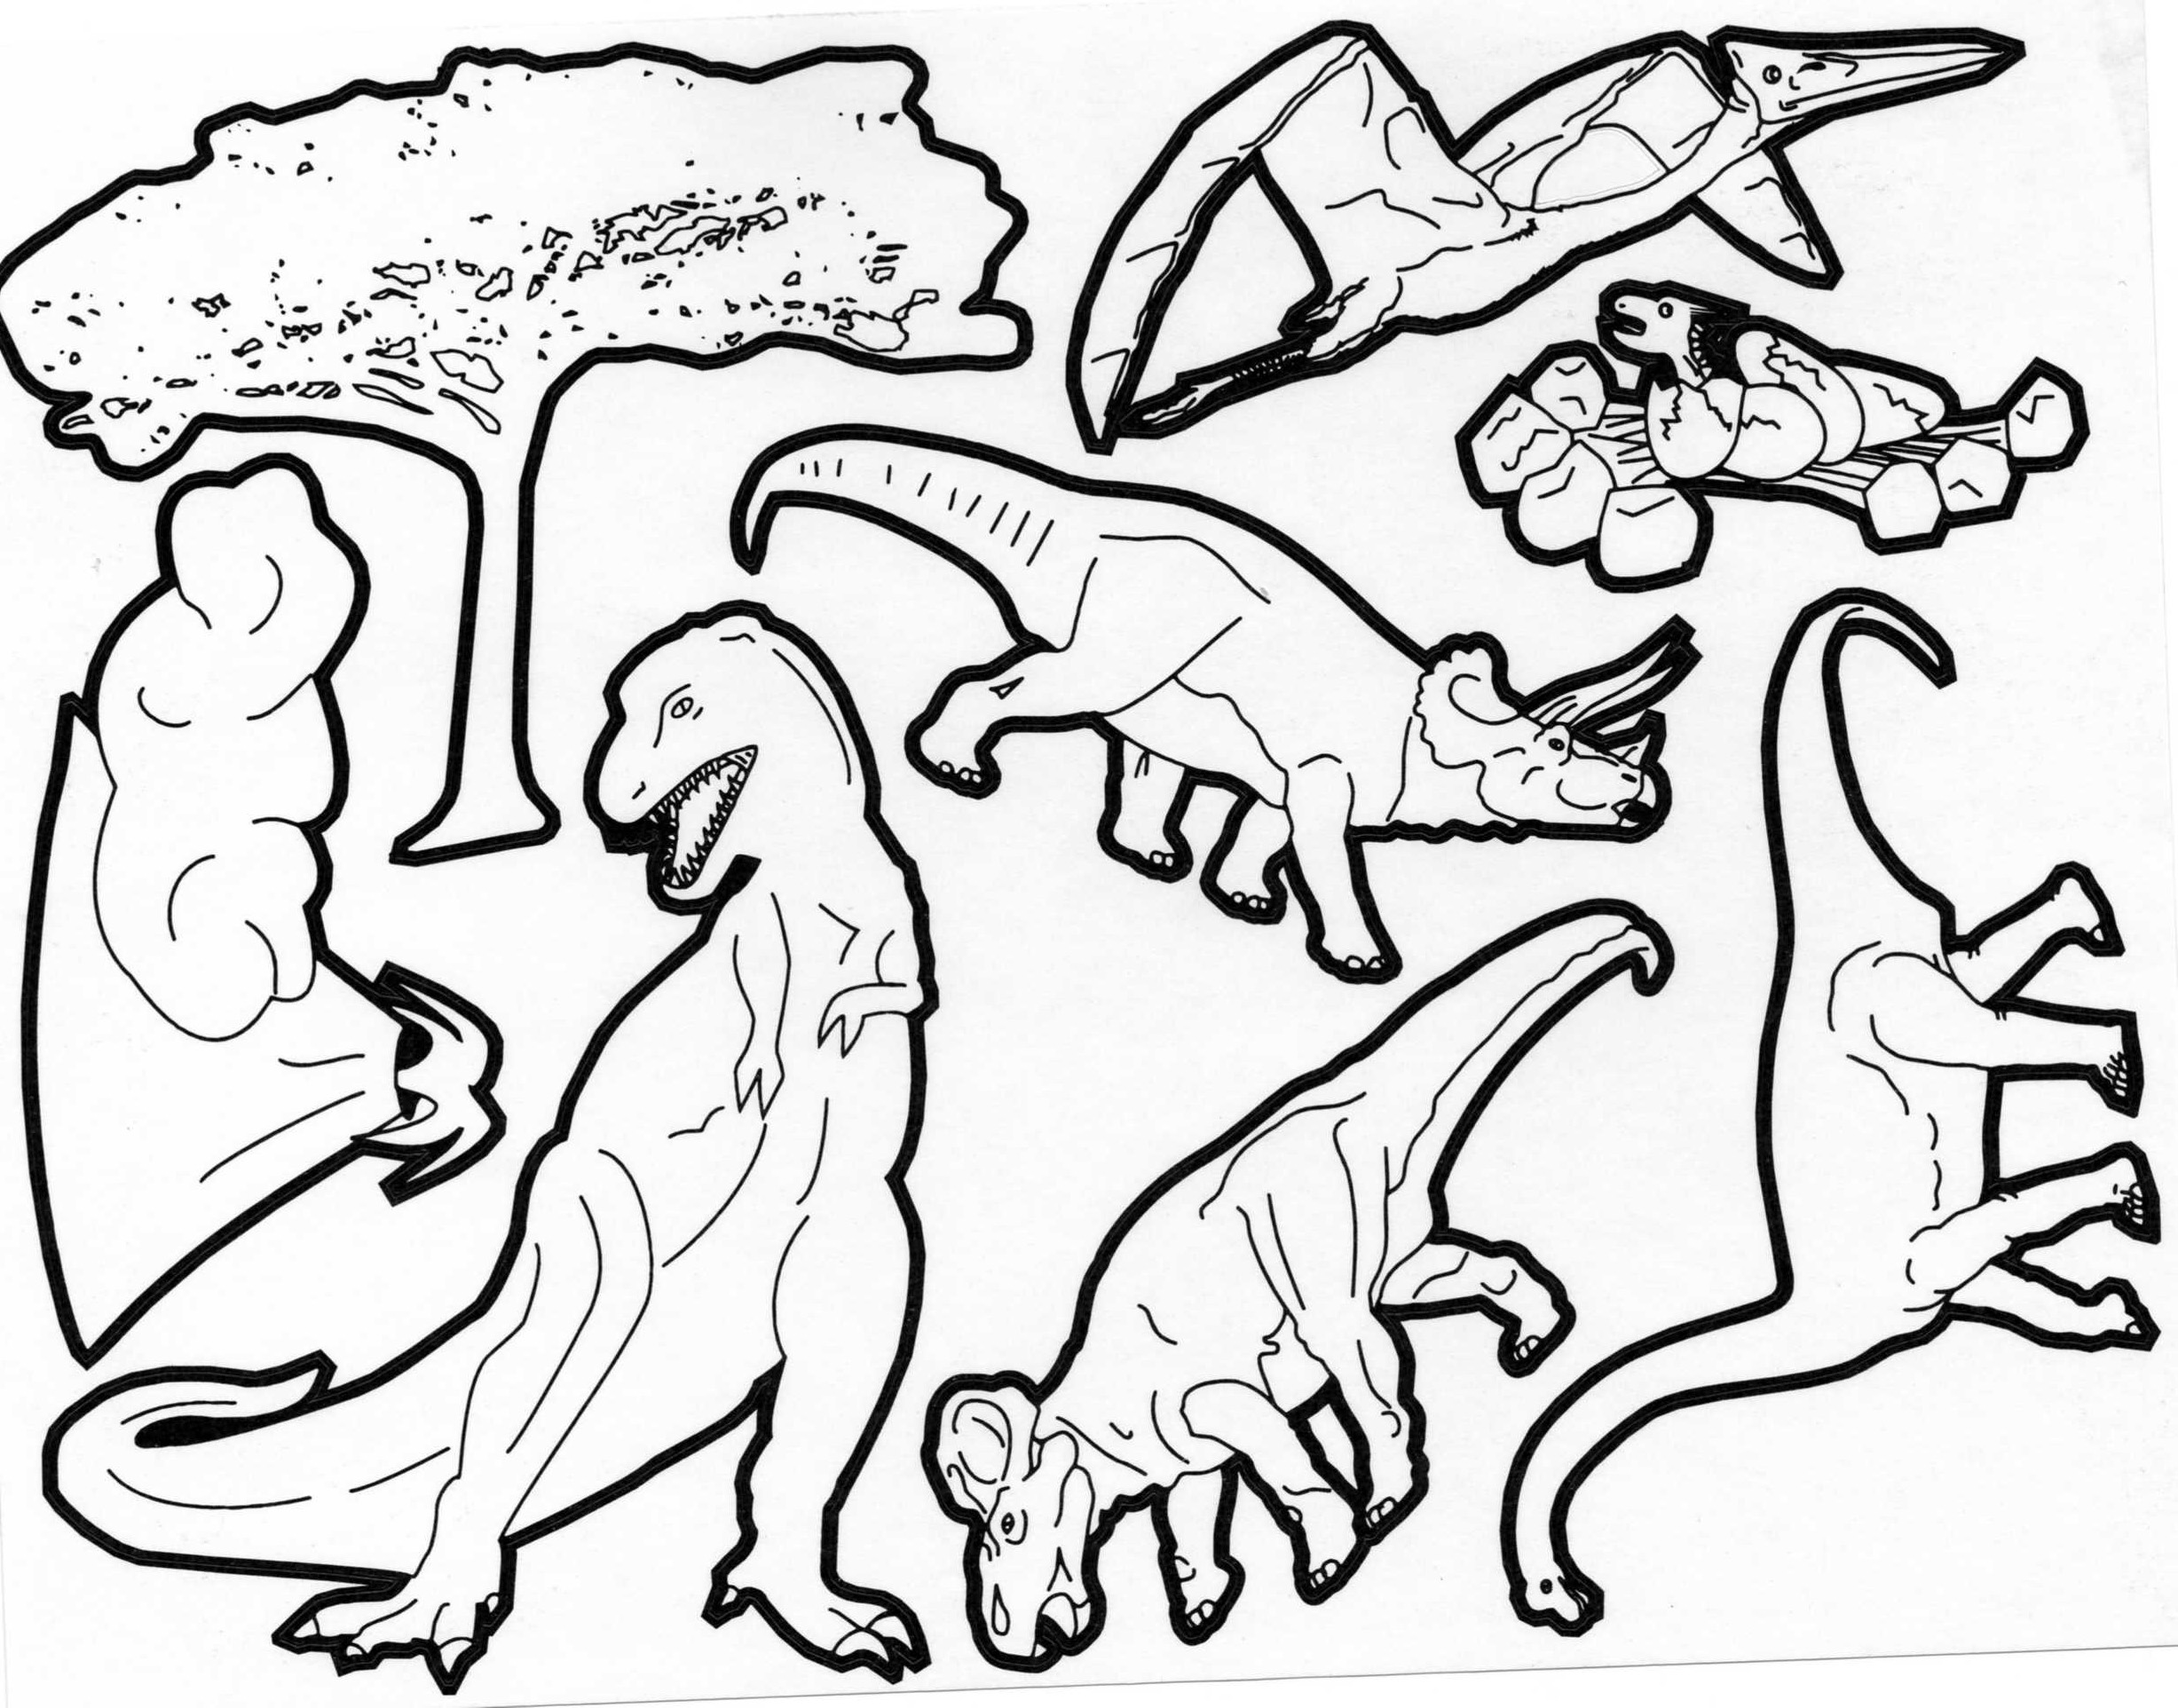 Plusieurs races de dinos à colorier : vélociraptors, T Rex, Brachiosaures etc...